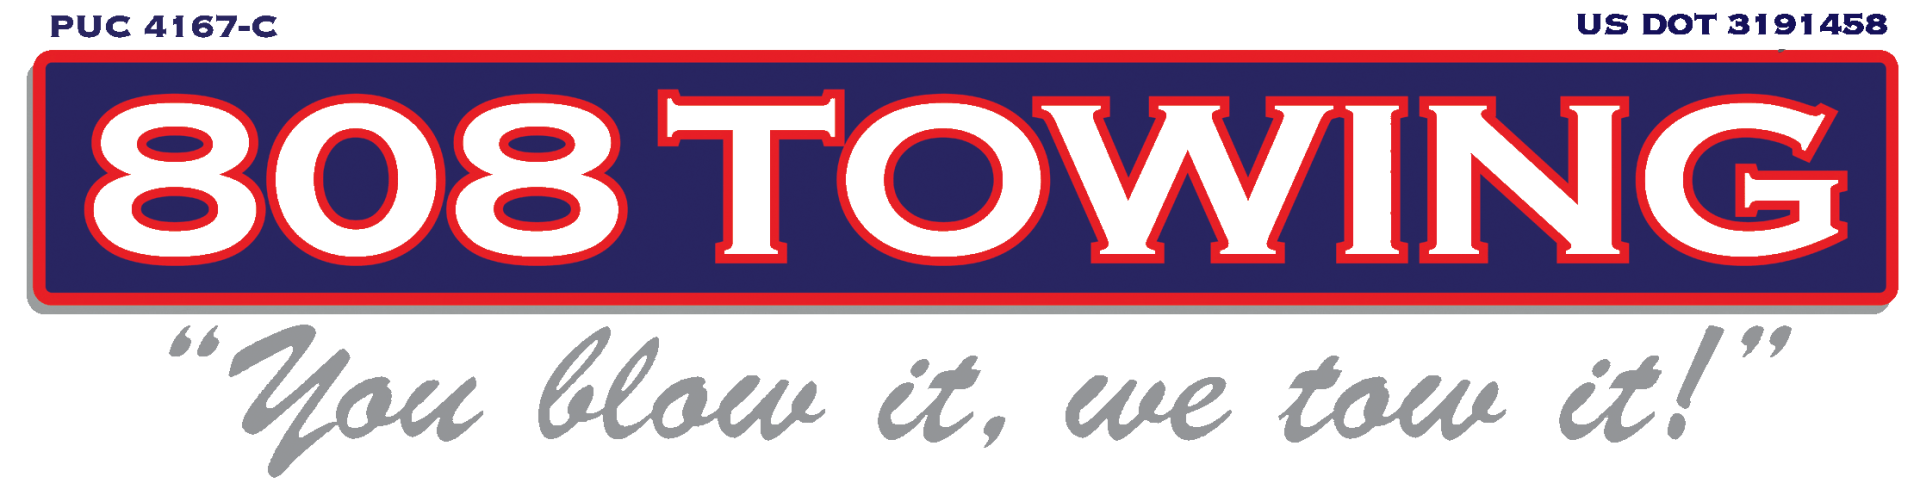 808 Towing - Logo